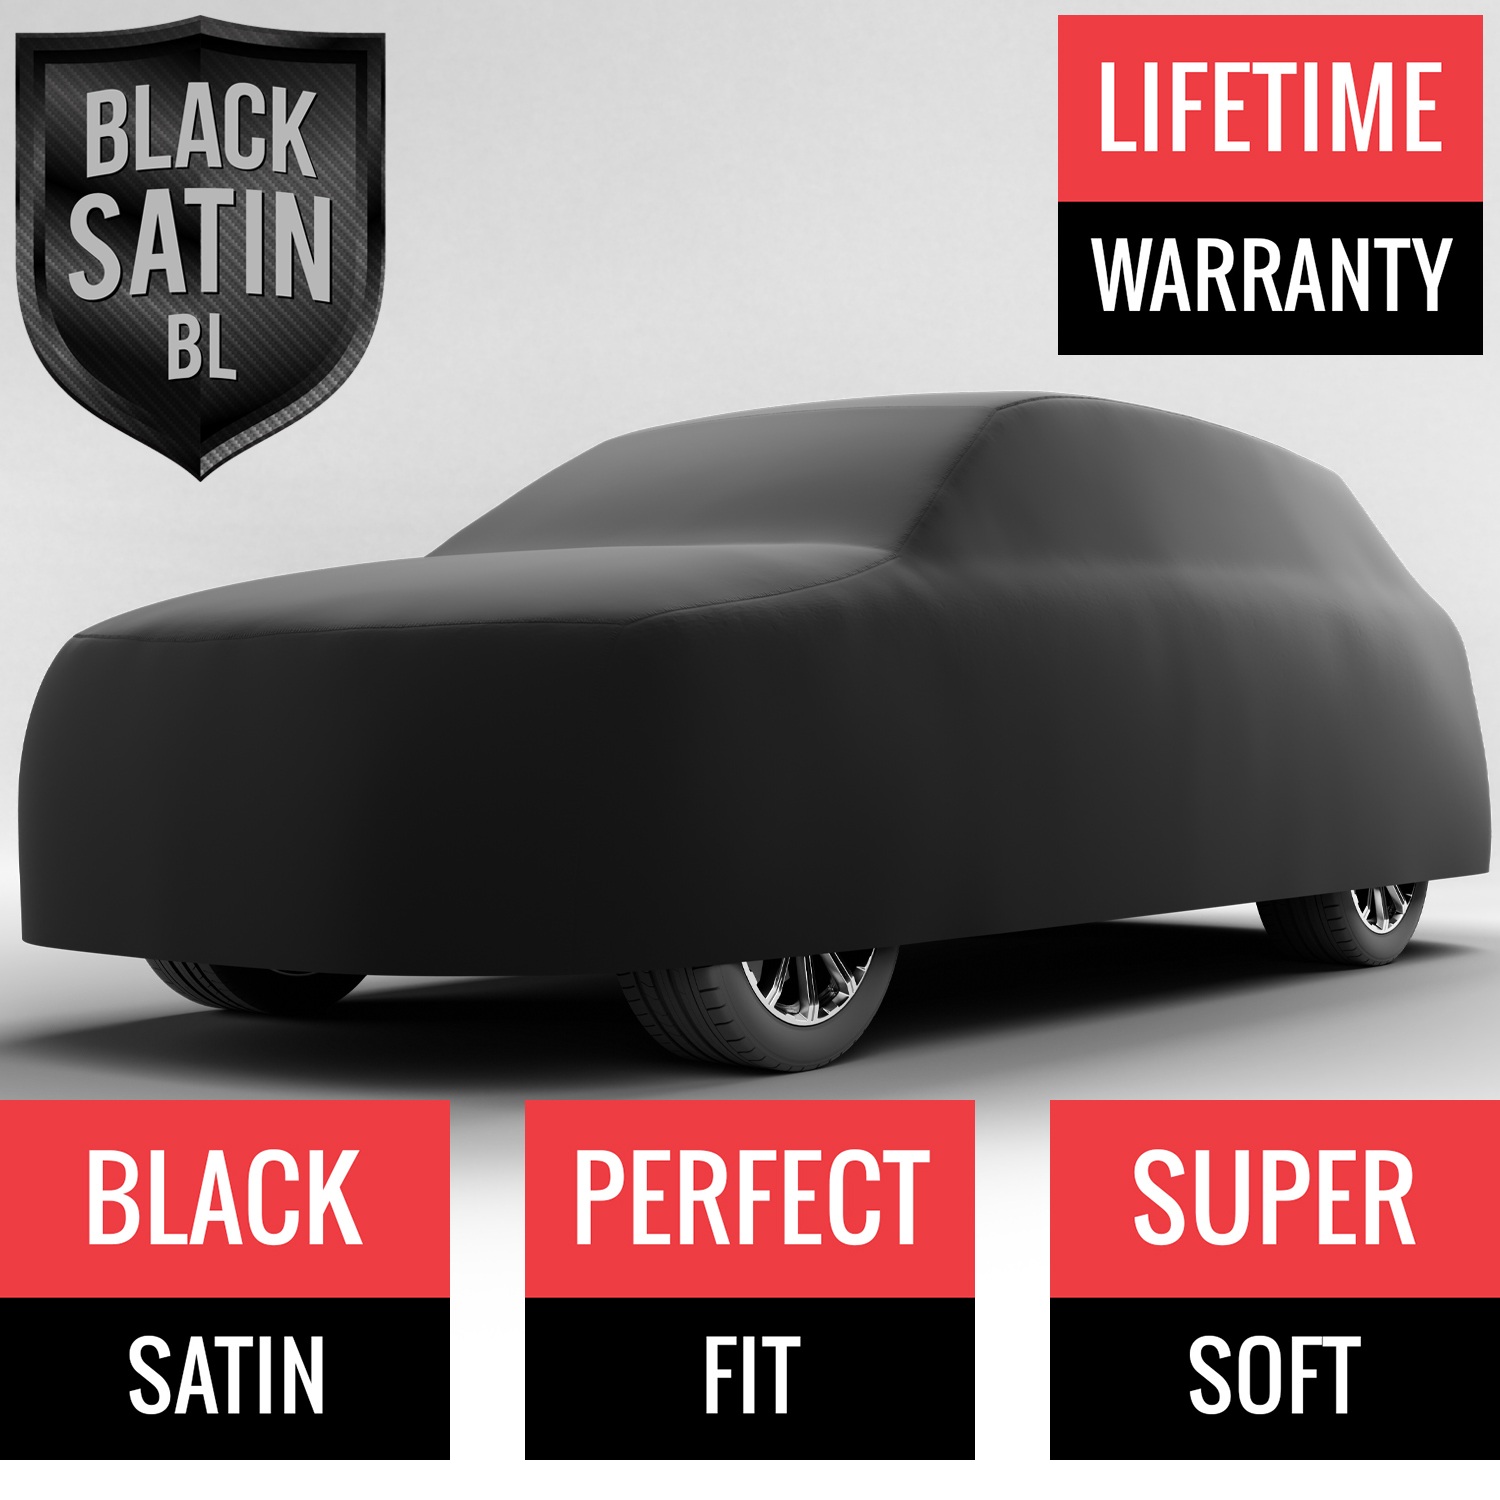 Black Satin BL - Black Car Cover for Bentley Bentayga 2019 SUV 4-Door